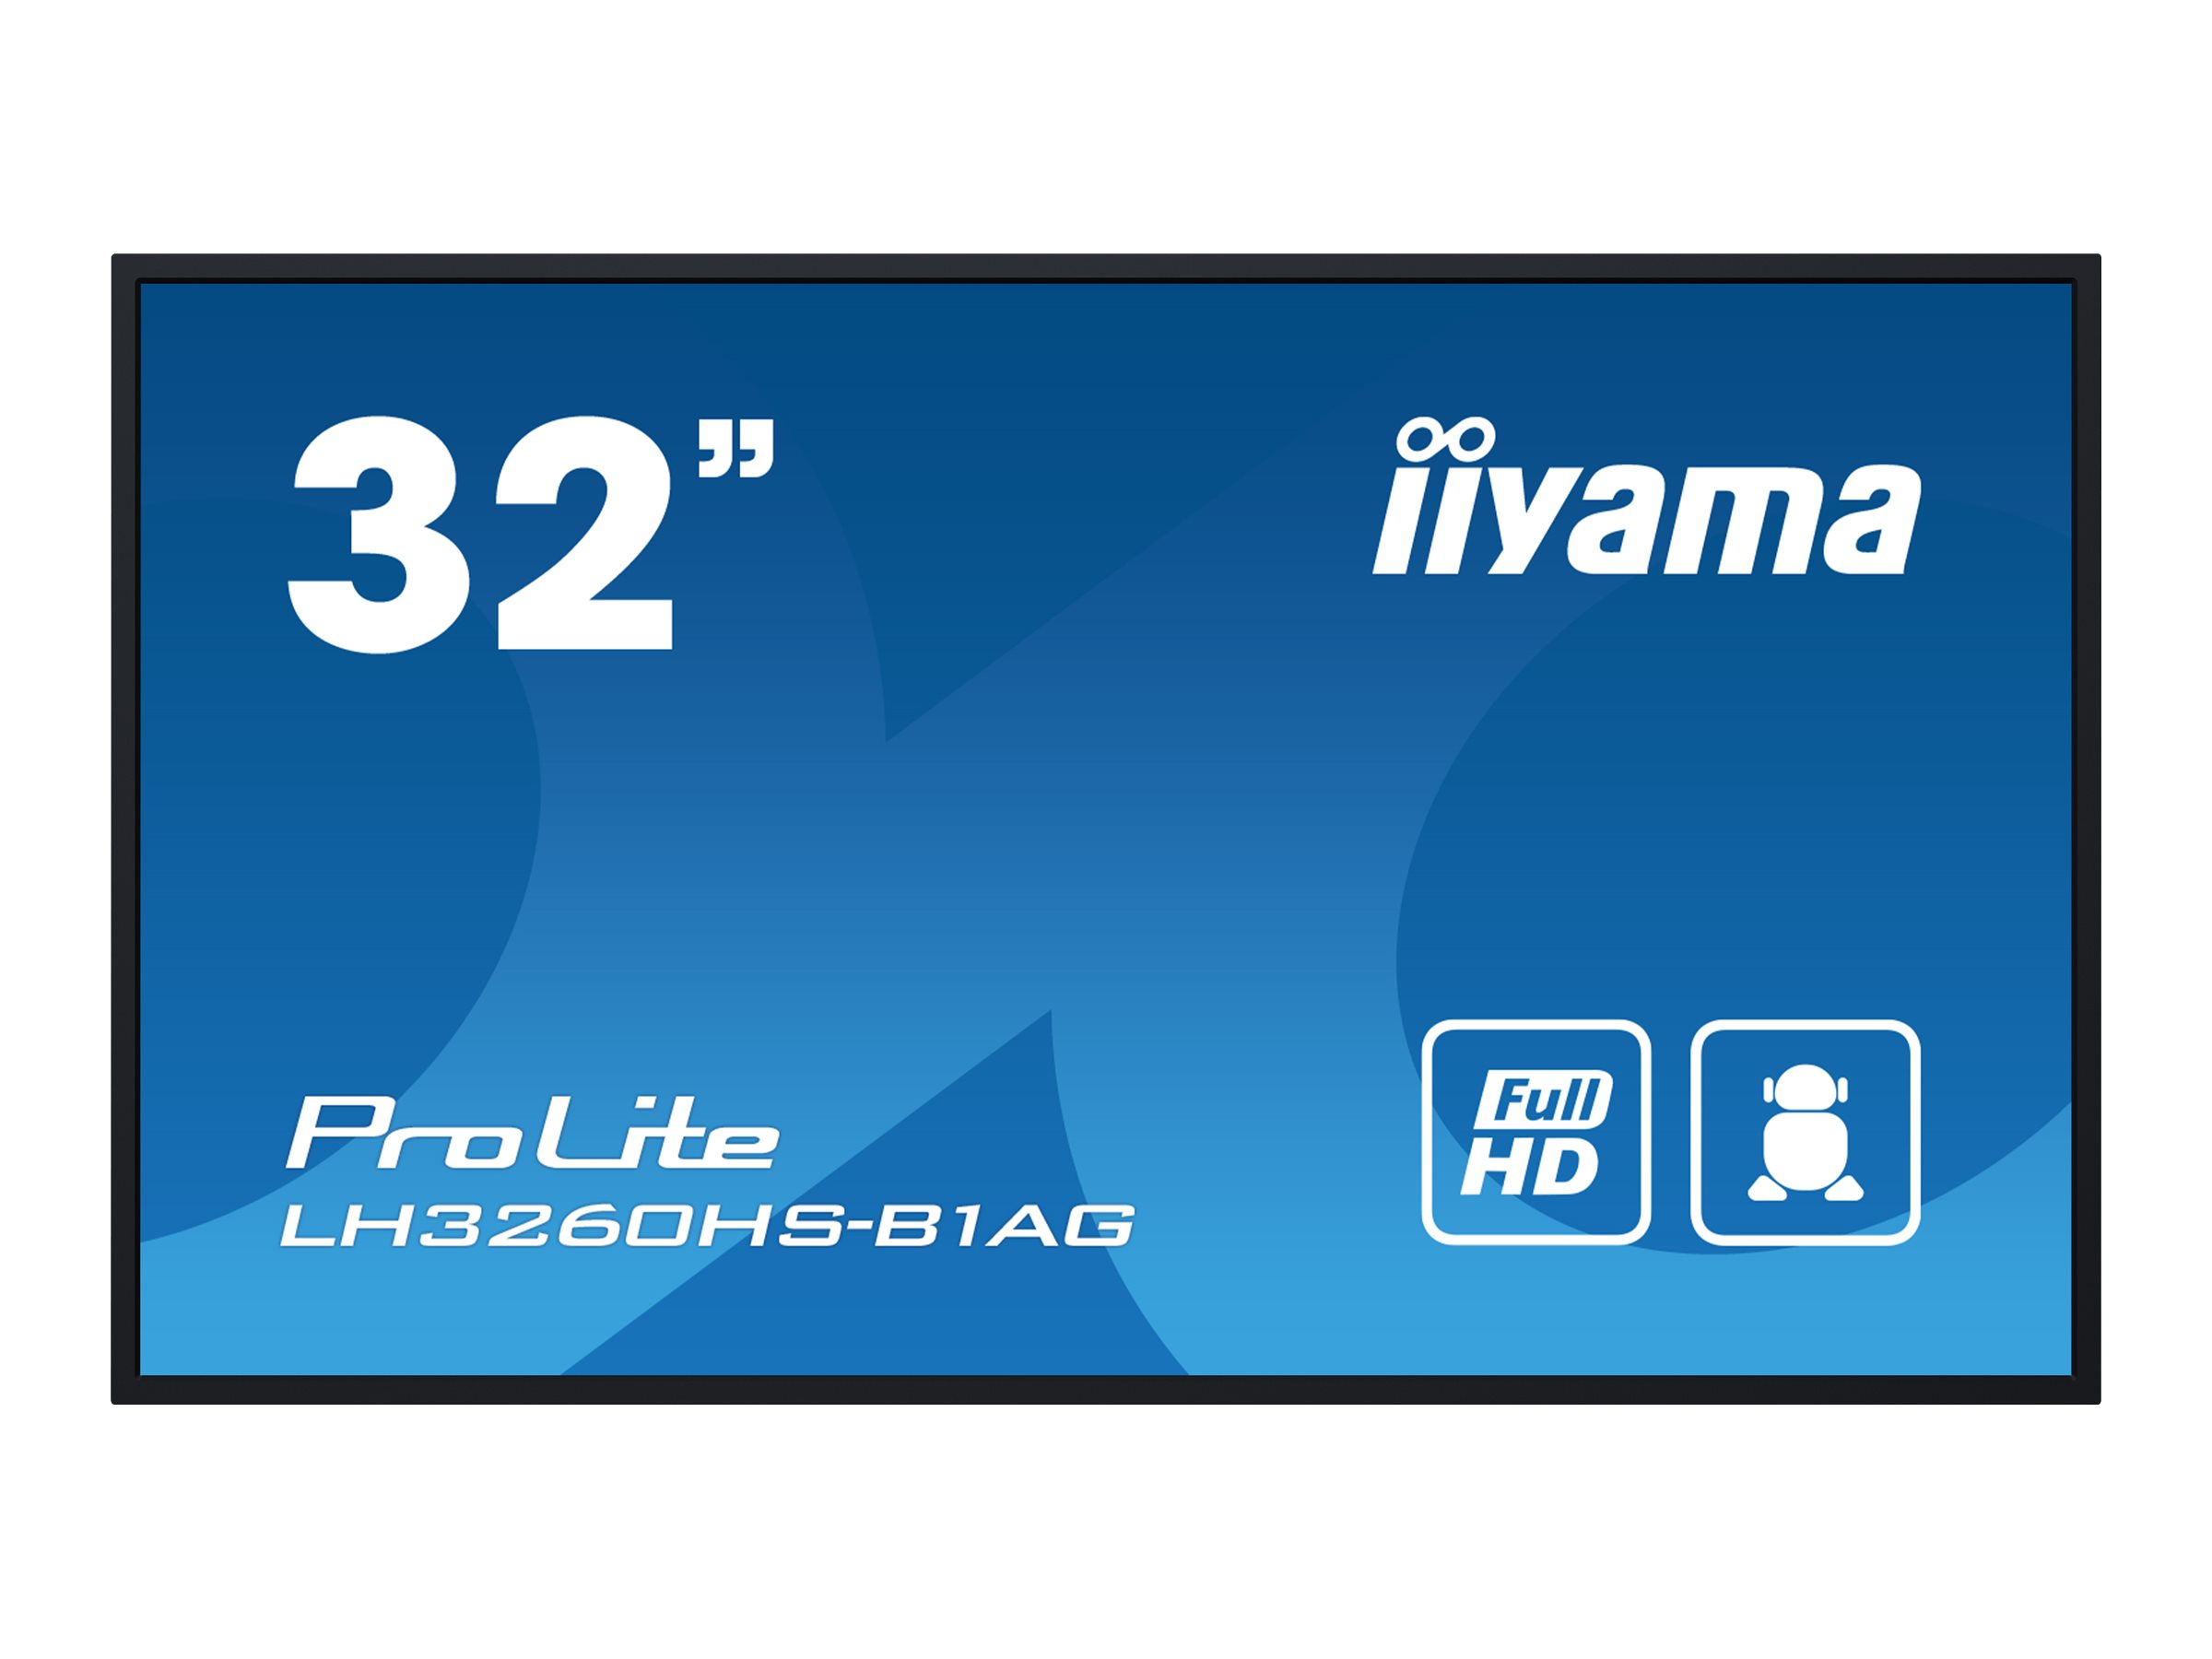 Iiyama LH3260HS-B1AG 32IN 1920X1080 FH